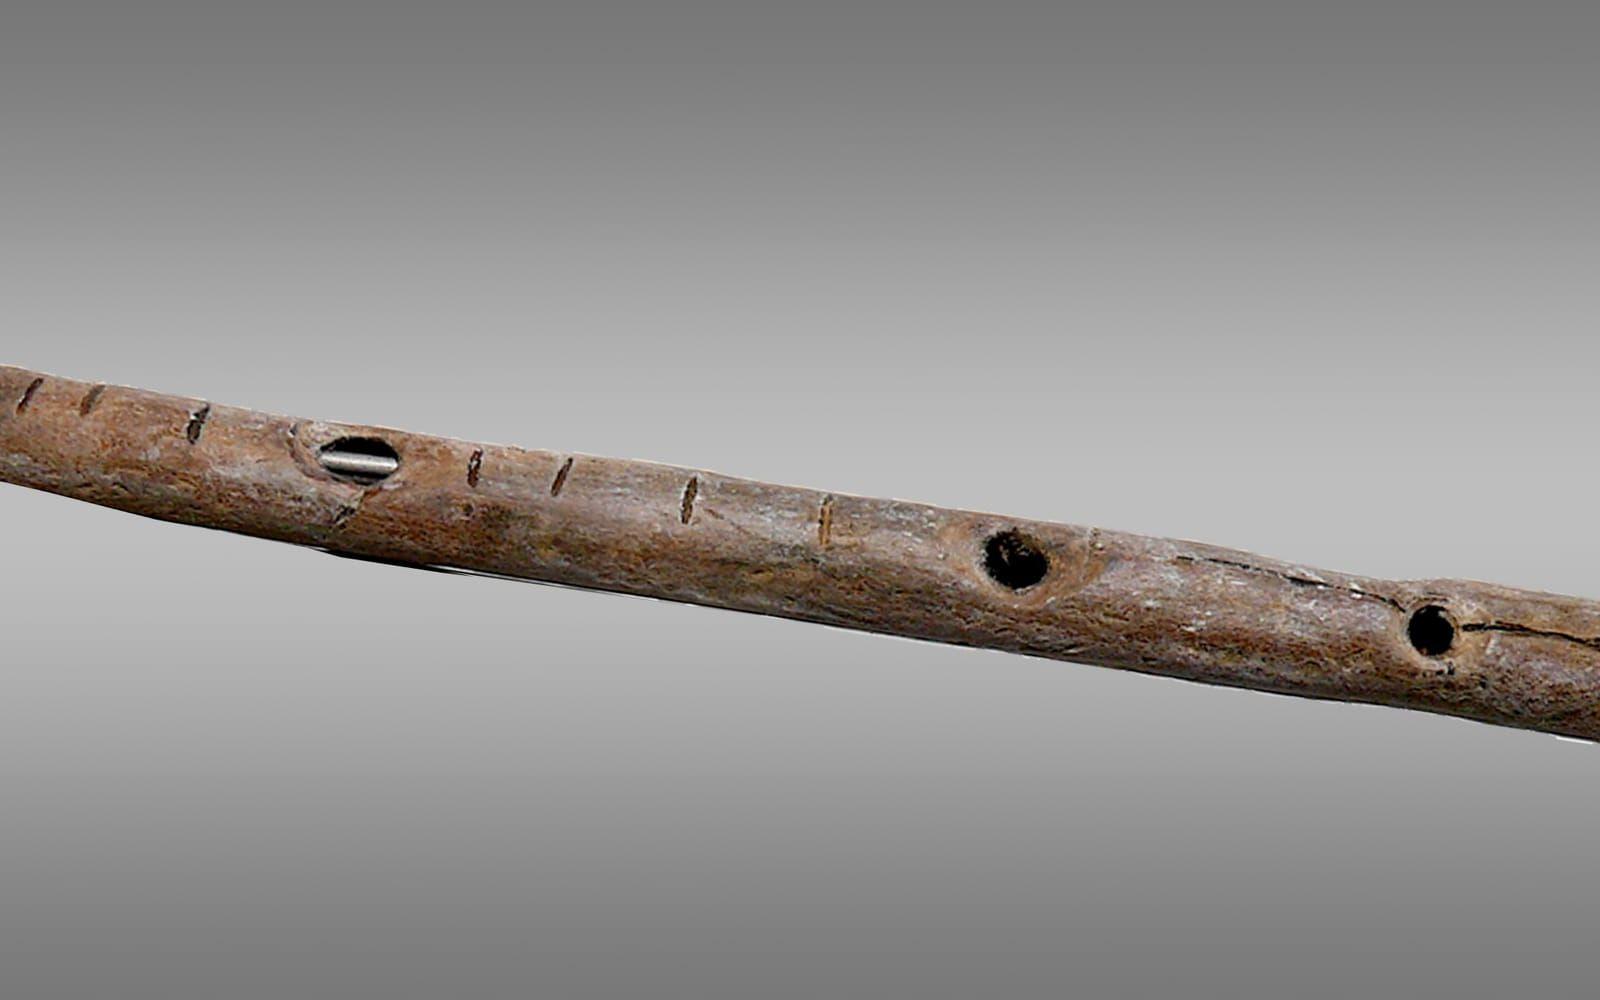 <strong>VÄRLDENS ÄLDSTA INSTRUMENT. </strong>2012 hittade arkeologer vad man tror är världens äldsta instrument i en grotta i tyska Geissenklösterle. Med hjälp av kol14-datering har man fastställt att flöjten, som är gjord av mammutben, är mellan 42.000 och 43.000 år gammal. I april 2017 släpptes en skiva med musik spelat på en replika av den gamla flöjten.